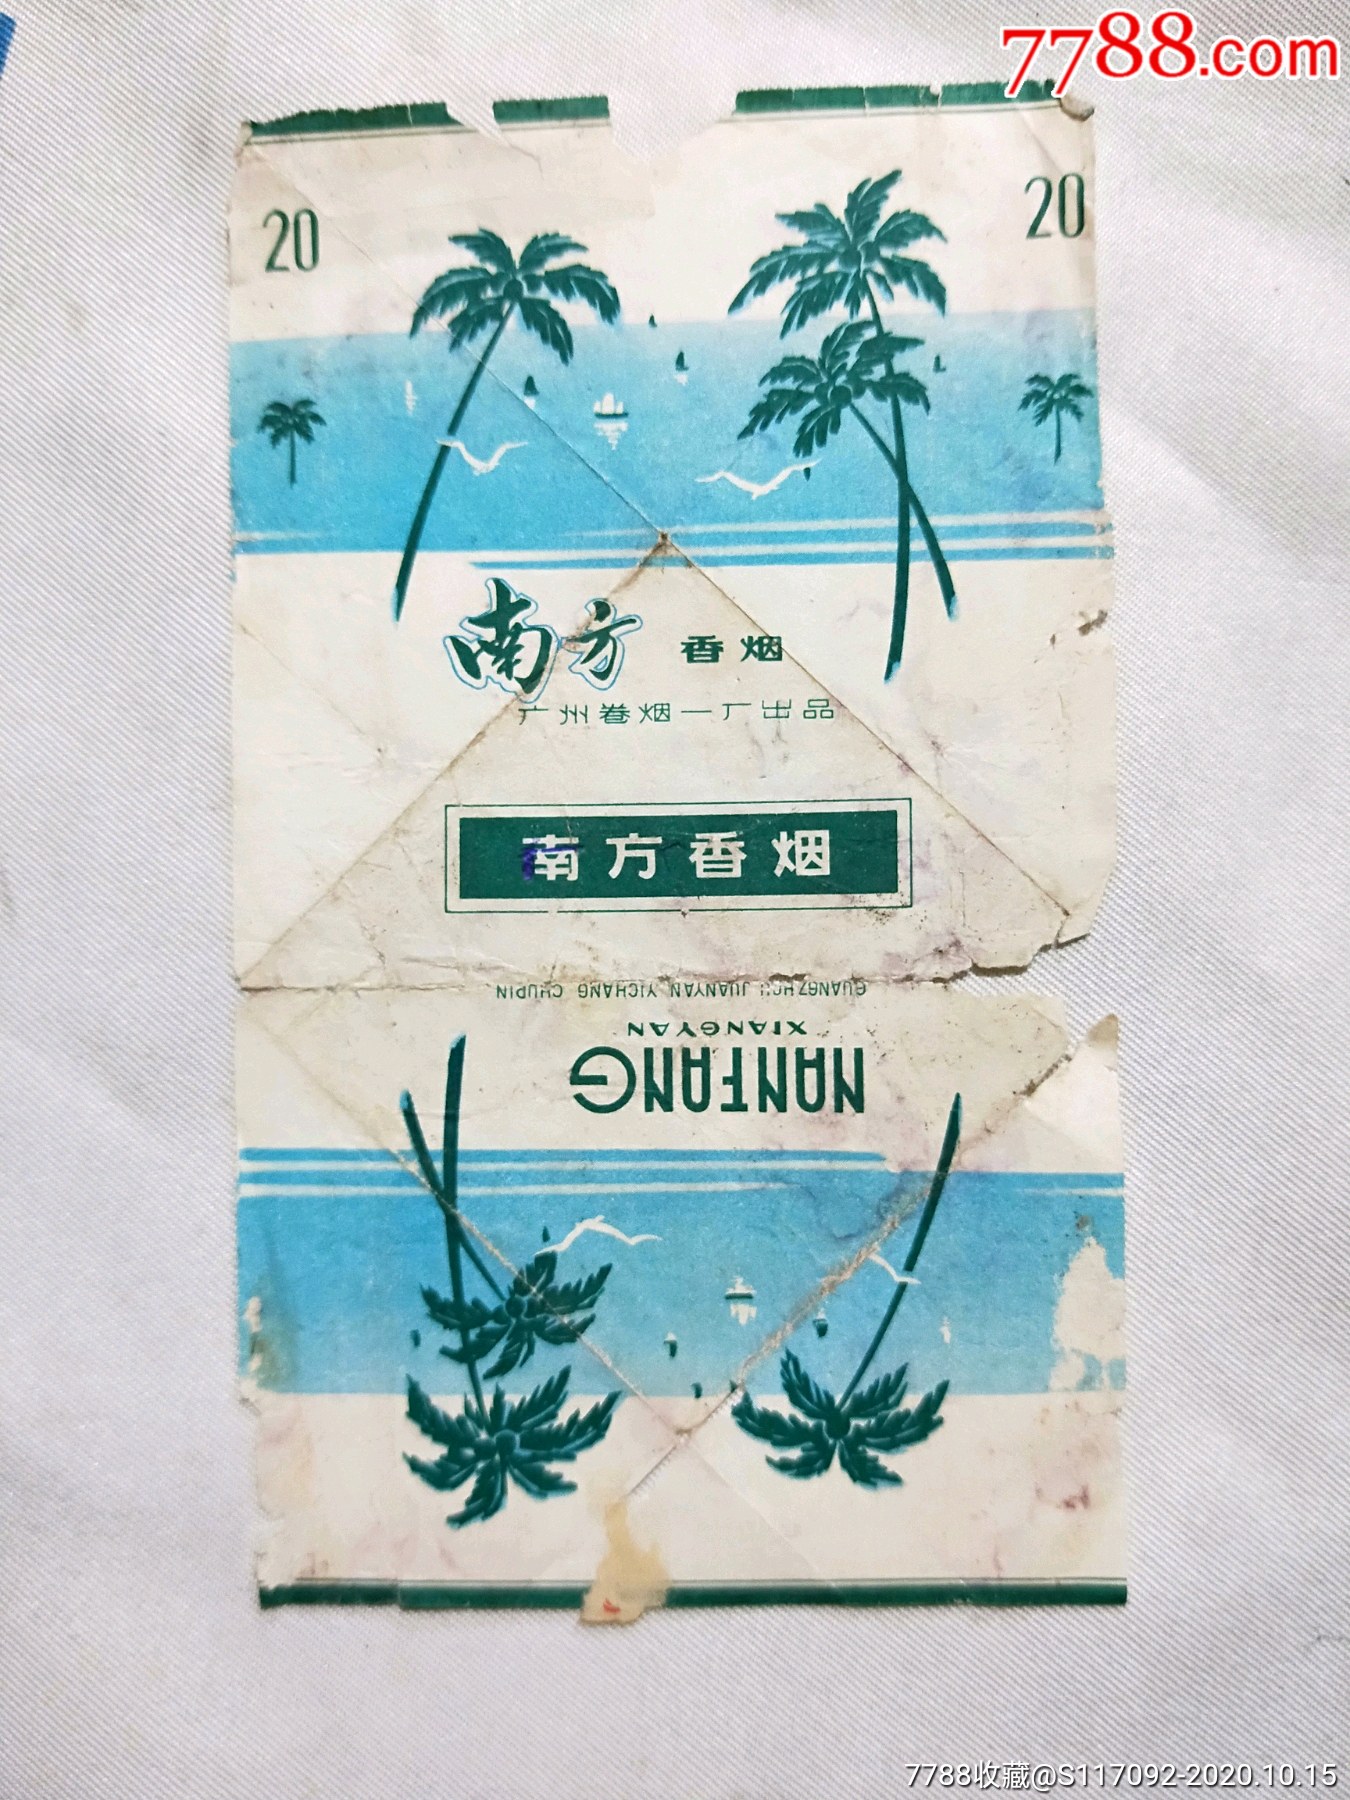 江西南方牌香烟图片